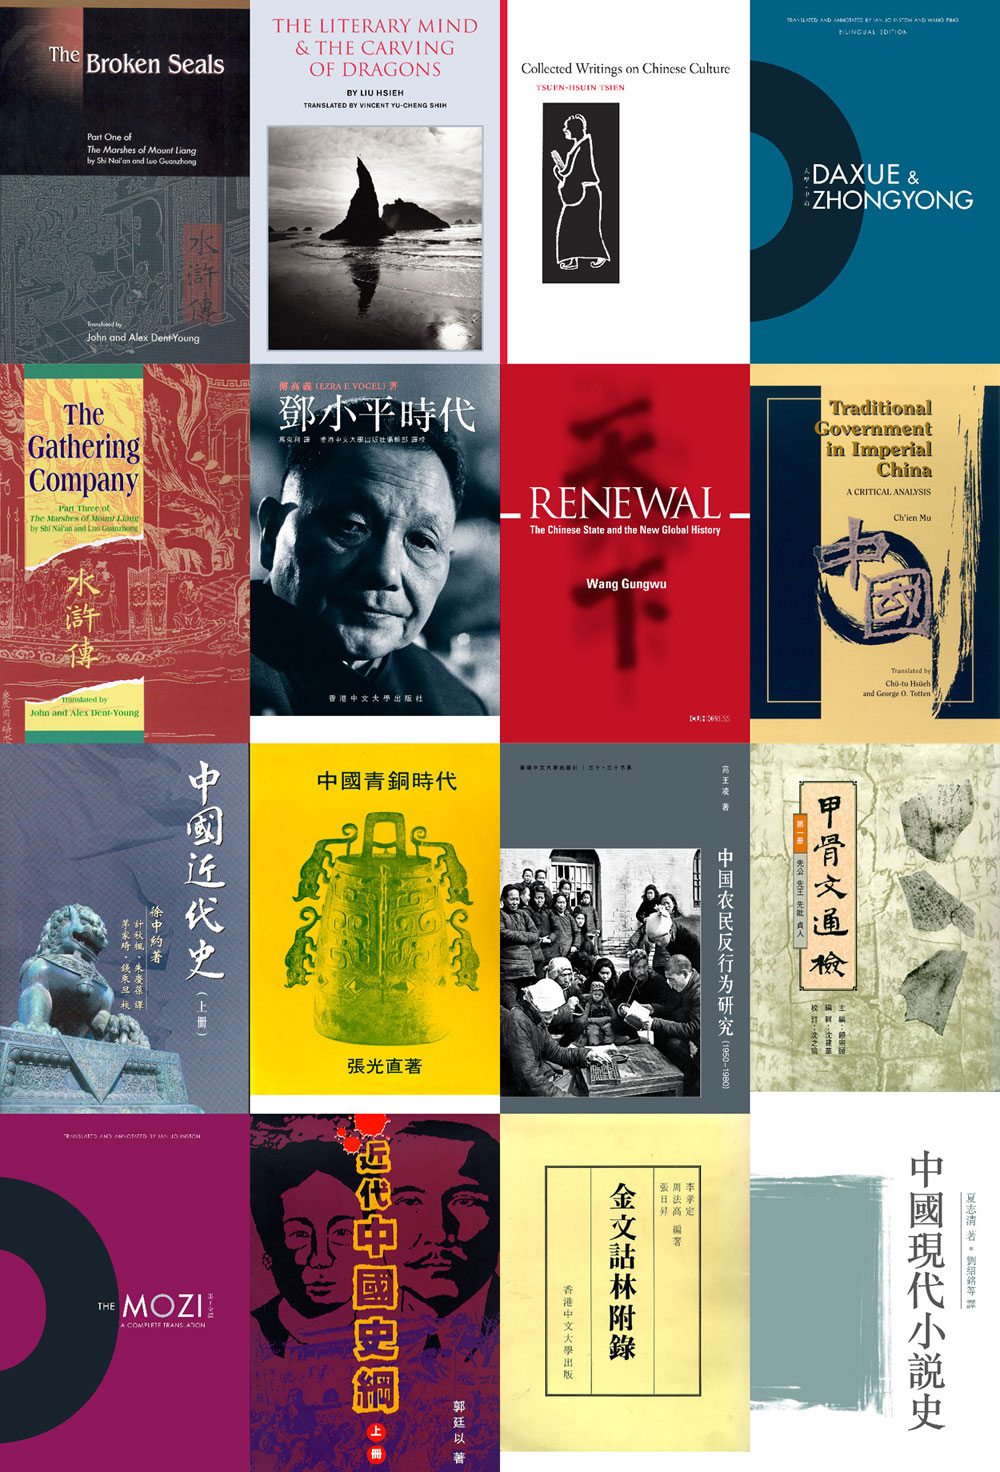 中文大学出版社以「弘扬中西文化，传播古今知识」為宗旨，迄今已出版的书籍逾1,300种，尤专於出版有关中国文化以及中国、香港研究的学术论著。